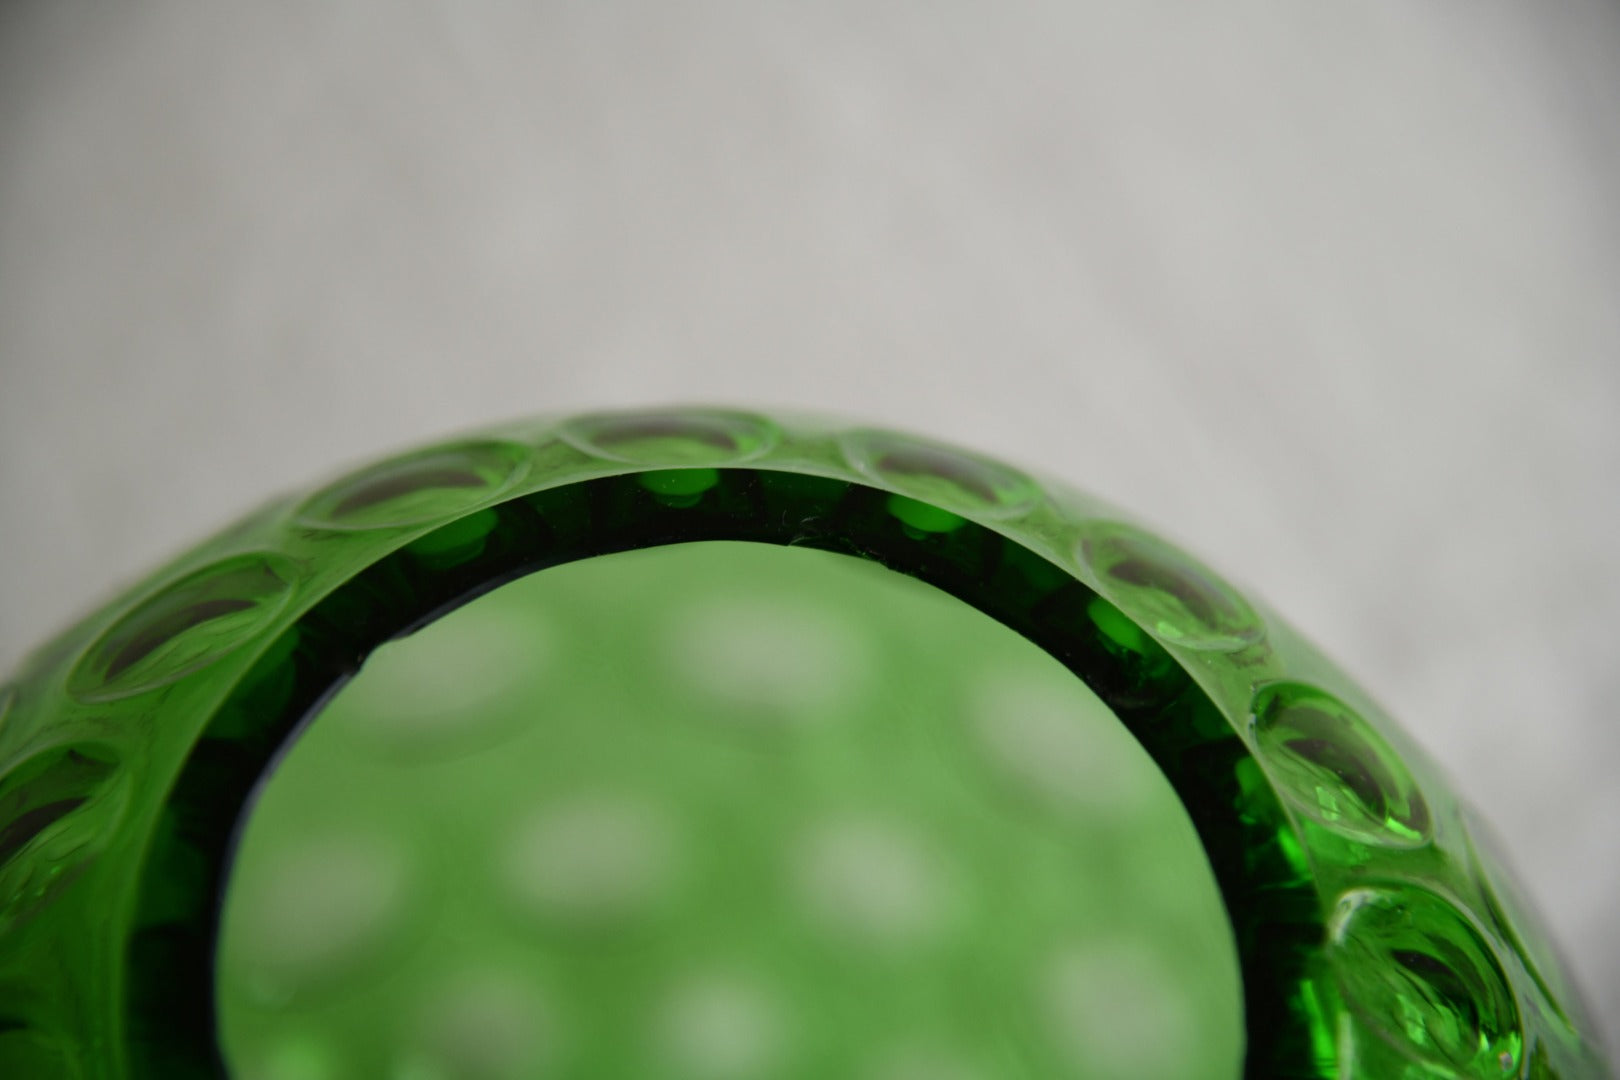 Czech Green Glass Bowl